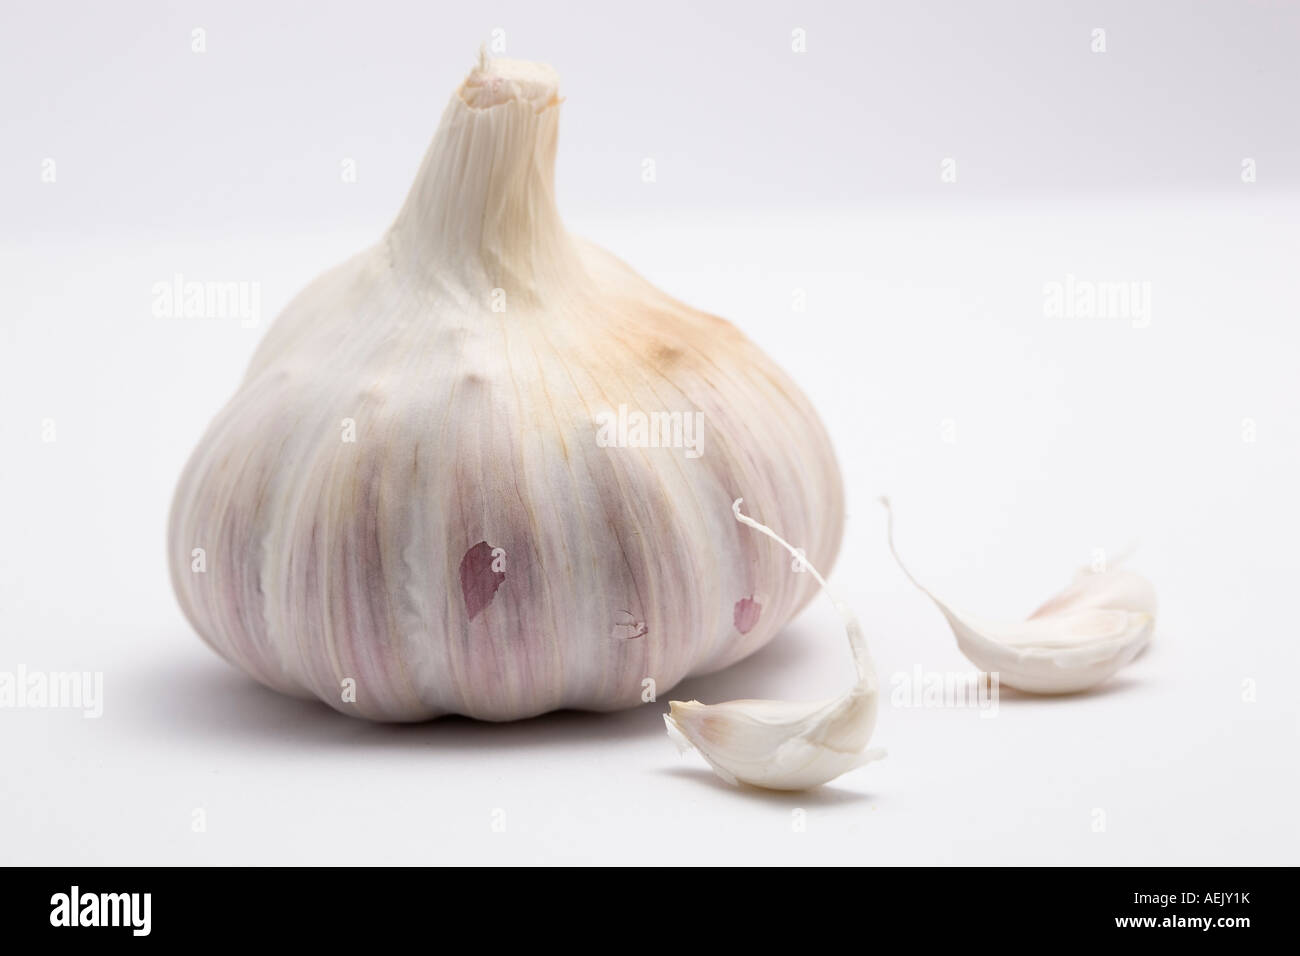 Garlic (Allium sativum) Stock Photo